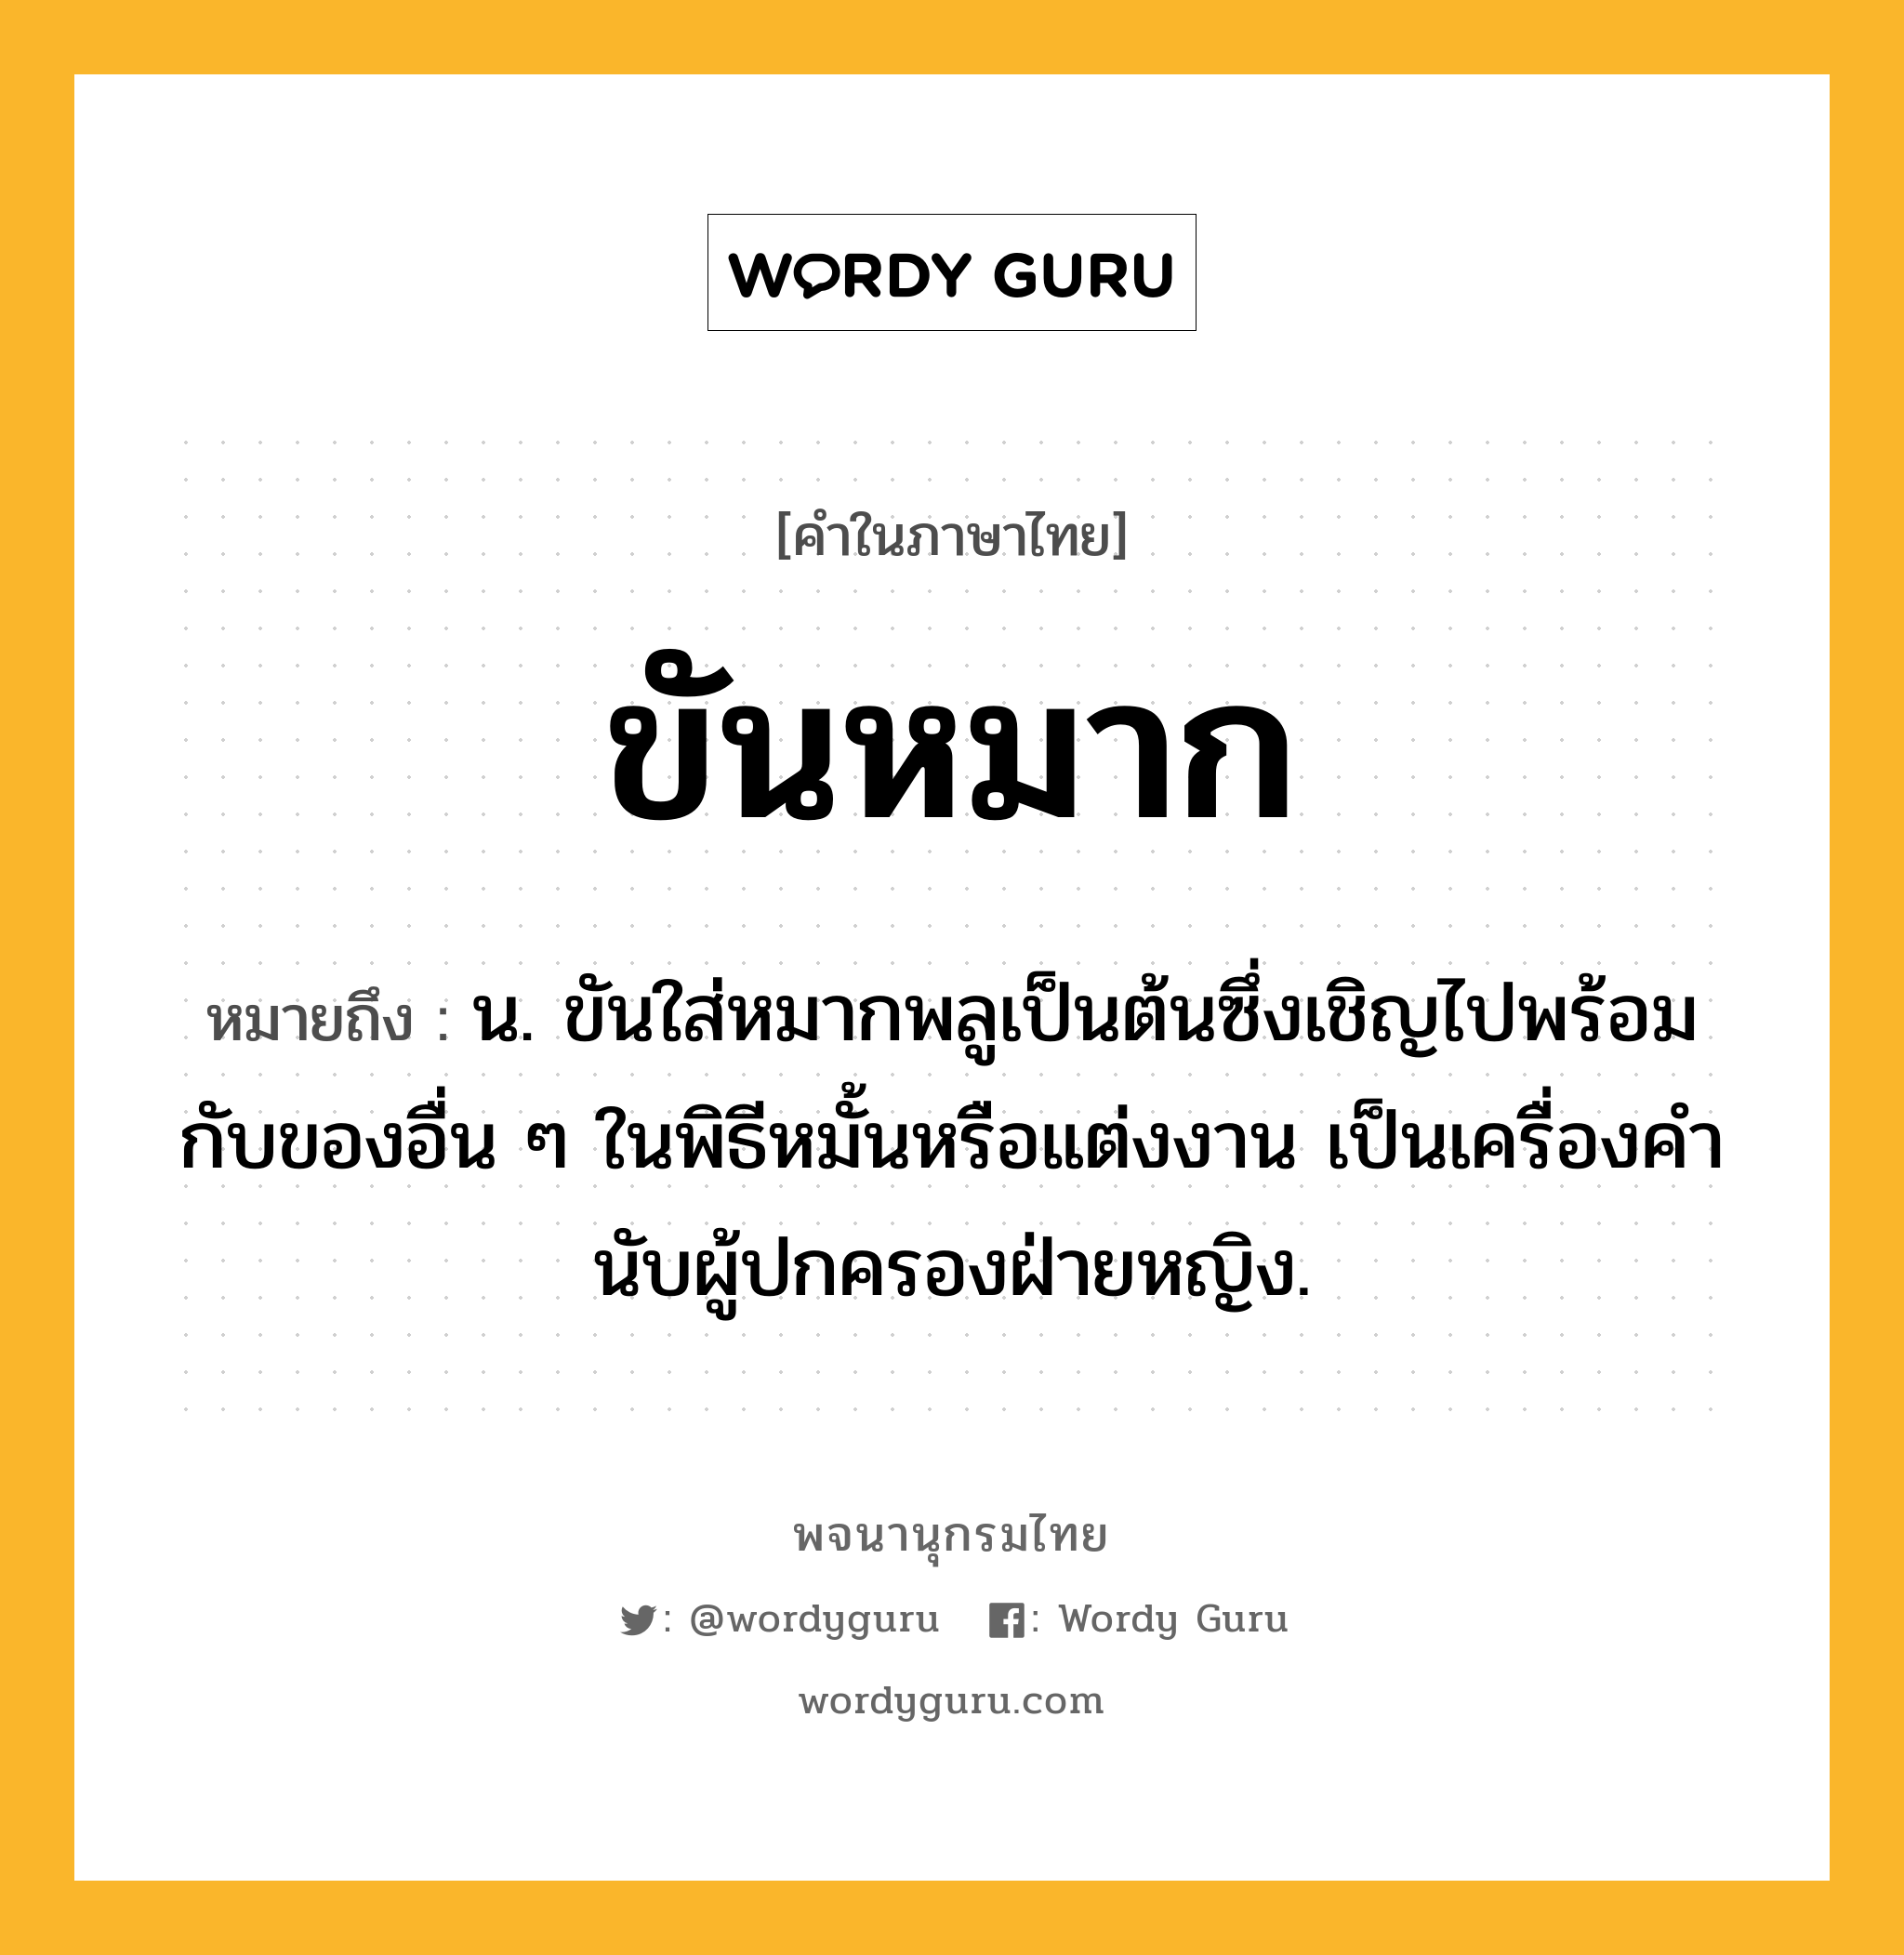 ขันหมาก ความหมาย หมายถึงอะไร?, คำในภาษาไทย ขันหมาก หมายถึง น. ขันใส่หมากพลูเป็นต้นซึ่งเชิญไปพร้อมกับของอื่น ๆ ในพิธีหมั้นหรือแต่งงาน เป็นเครื่องคํานับผู้ปกครองฝ่ายหญิง.